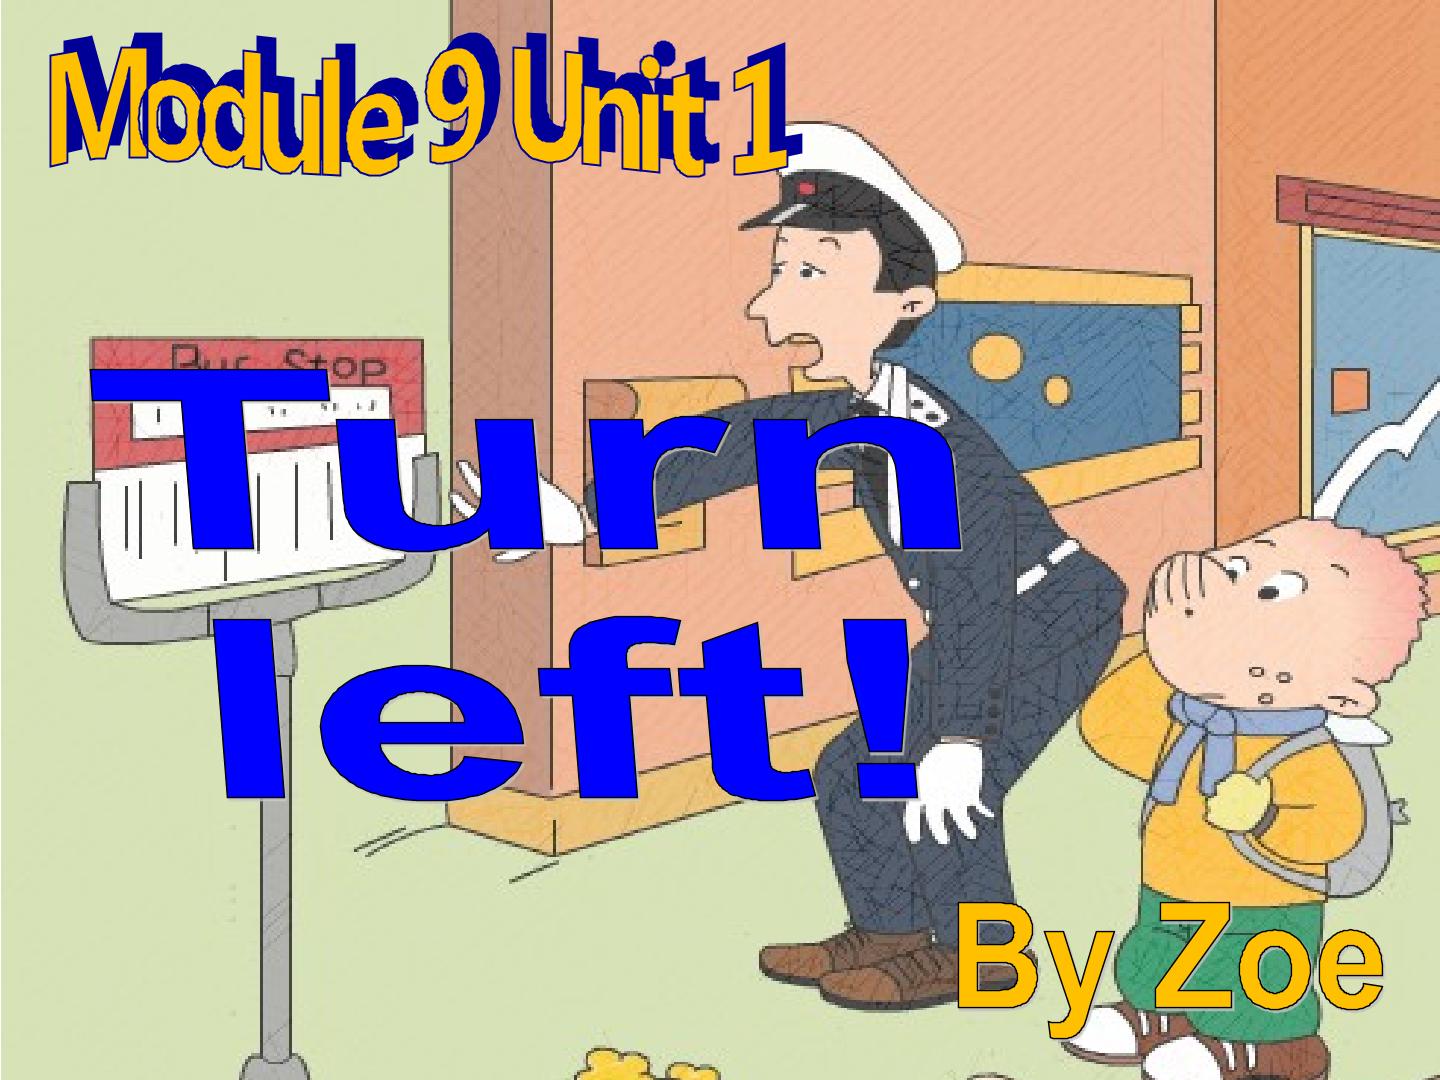 Unit 1 Turn left!